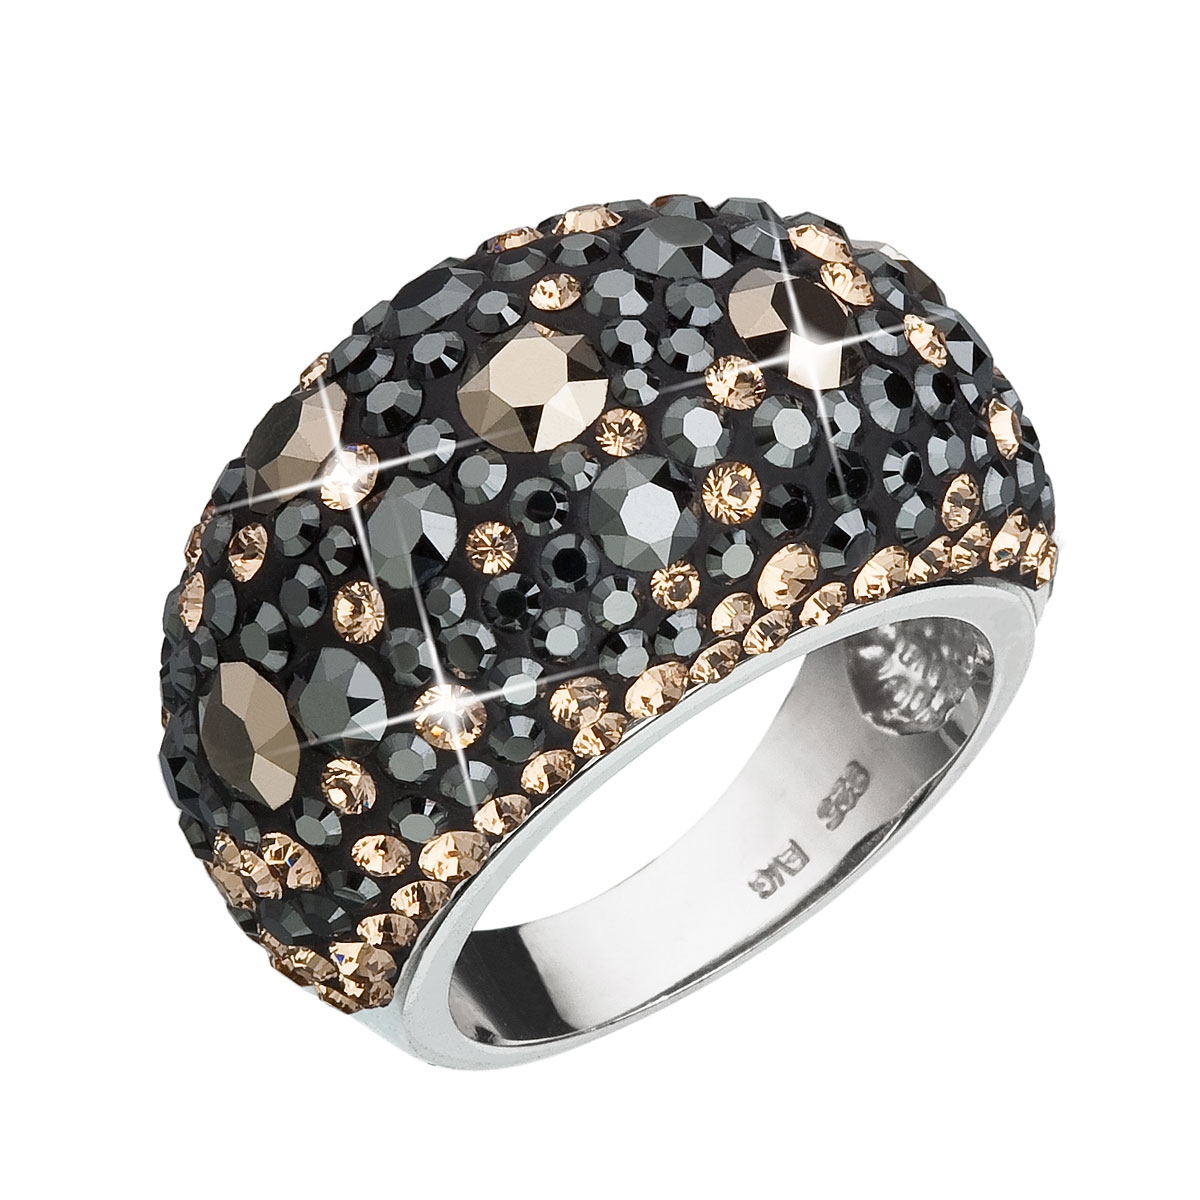 Strieborný prsteň s kryštálmi Crystals from Swarovski ®, Colorado